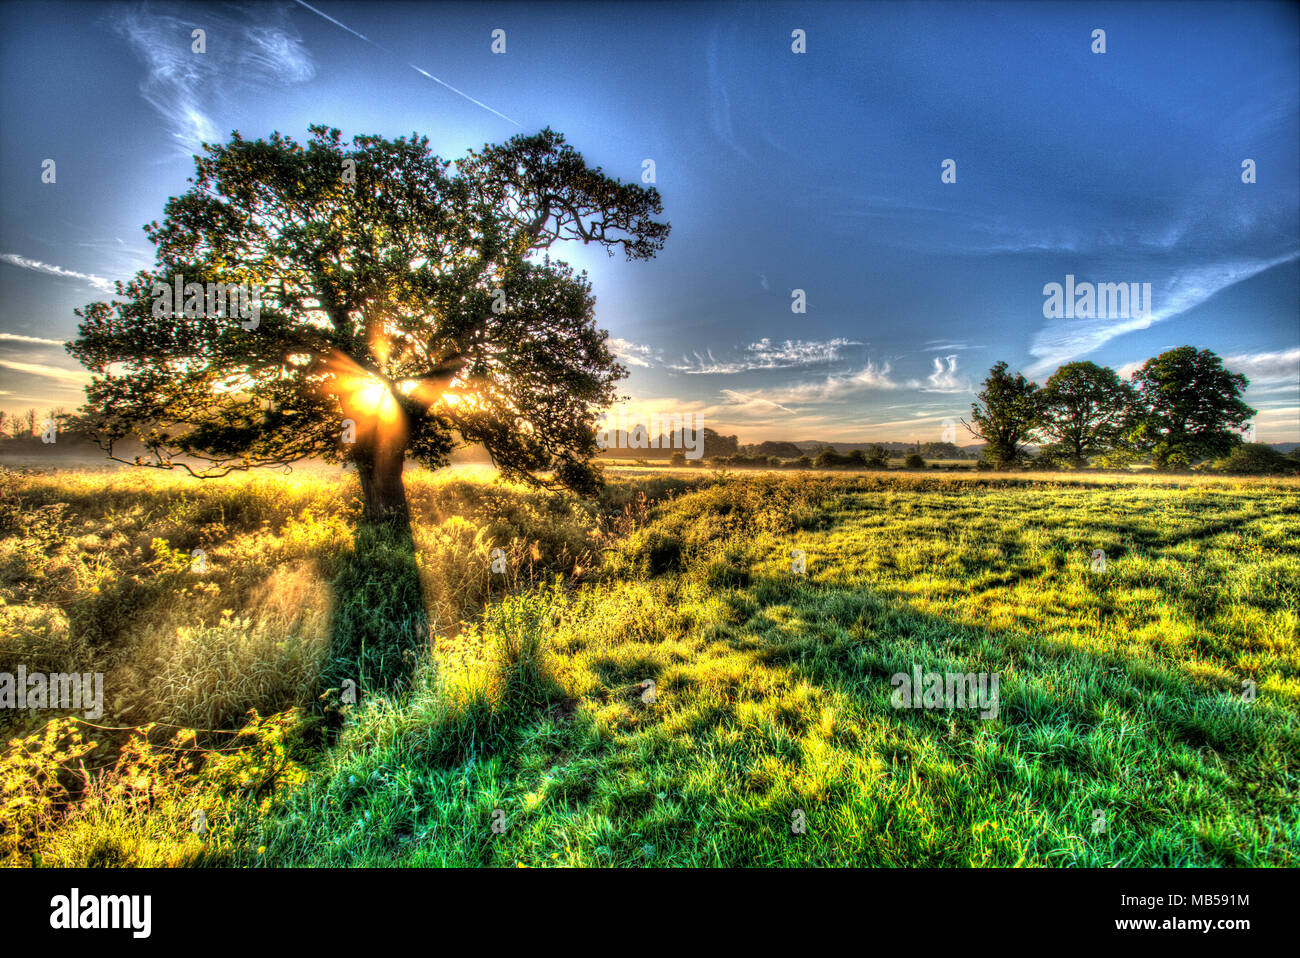 Aldea de Coddington, Inglaterra. Amanecer artístico sobre una pastura campo agrícola y árbol de roble en la zona rural de Cheshire. Foto de stock